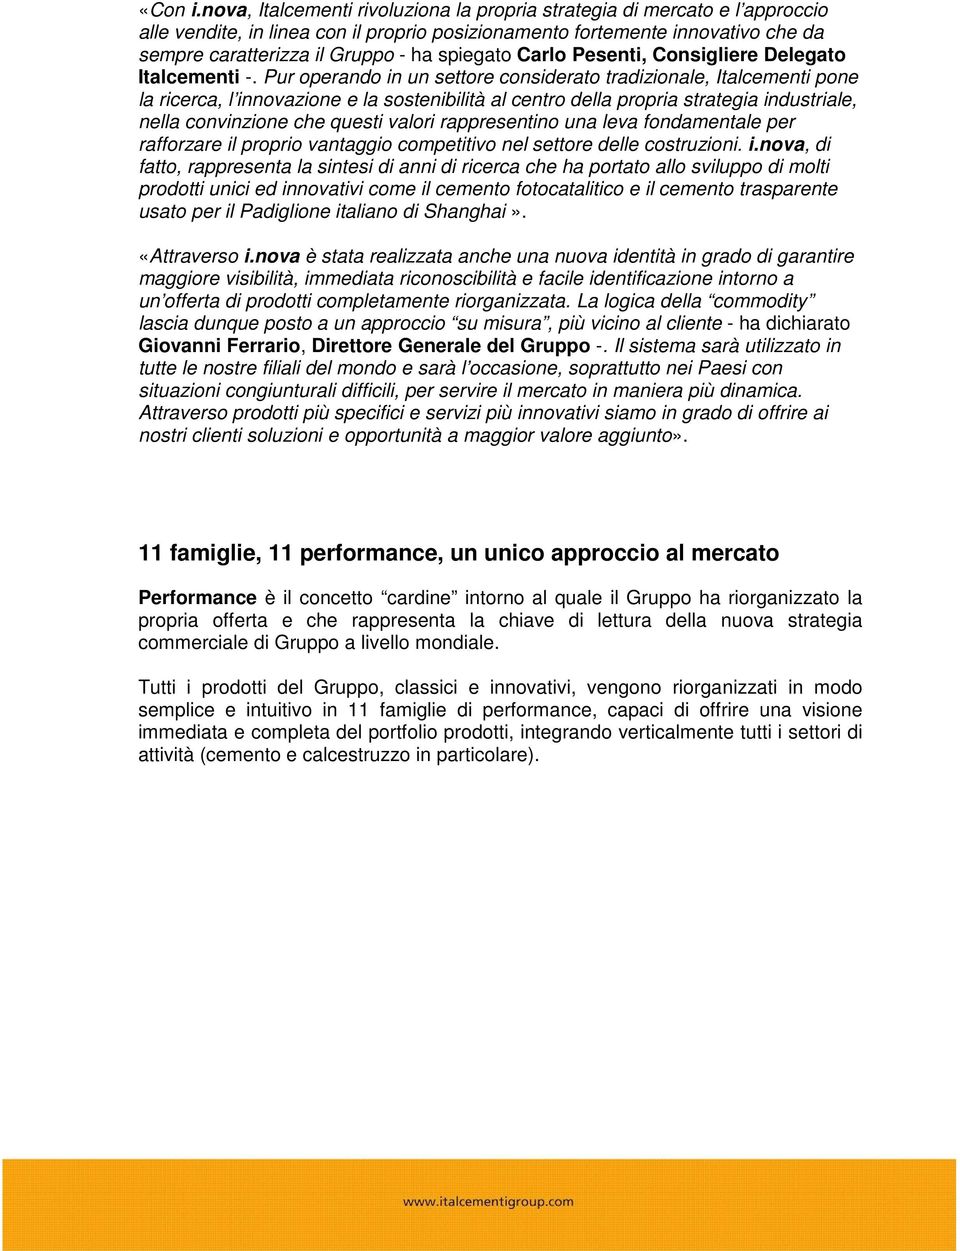 spiegato Carlo Pesenti, Consigliere Delegato Italcementi -.